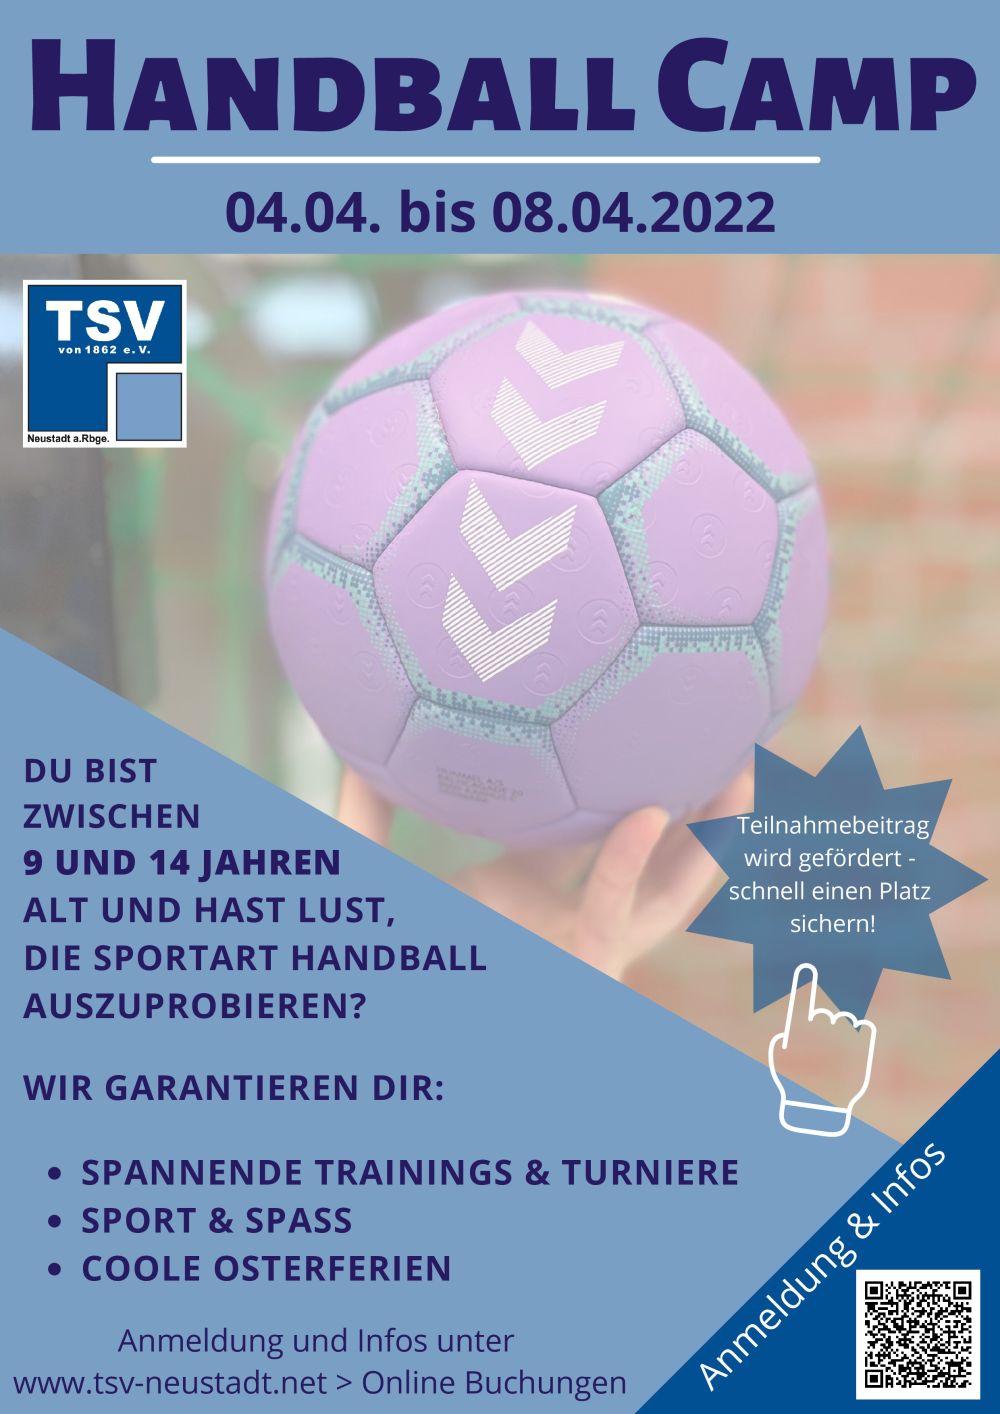 TSV Handball Camp Flyer